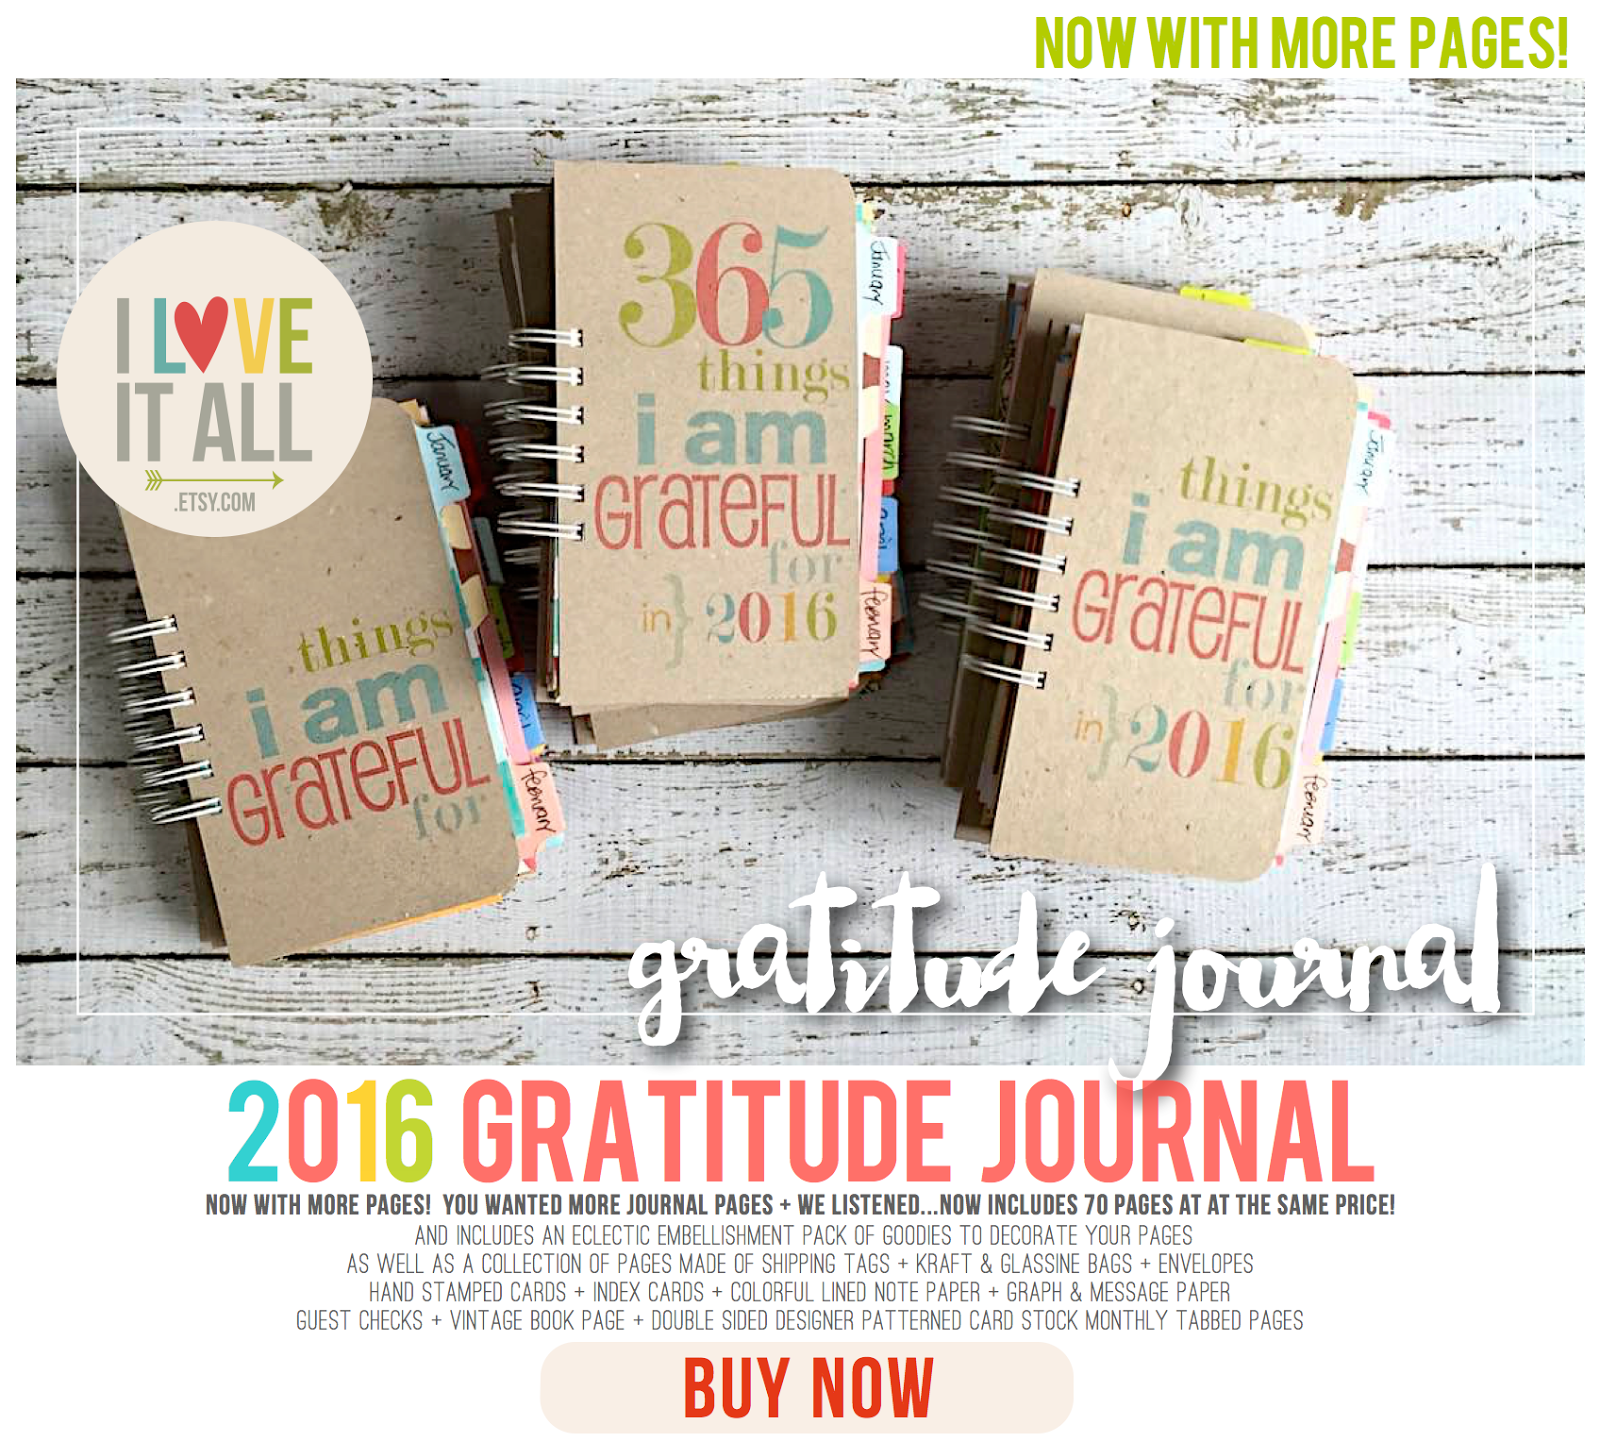 #scrapbooking #365things #365 #grateful #gratitude #thankful #journal #writing #journaling #365thingsiamgratefulfor